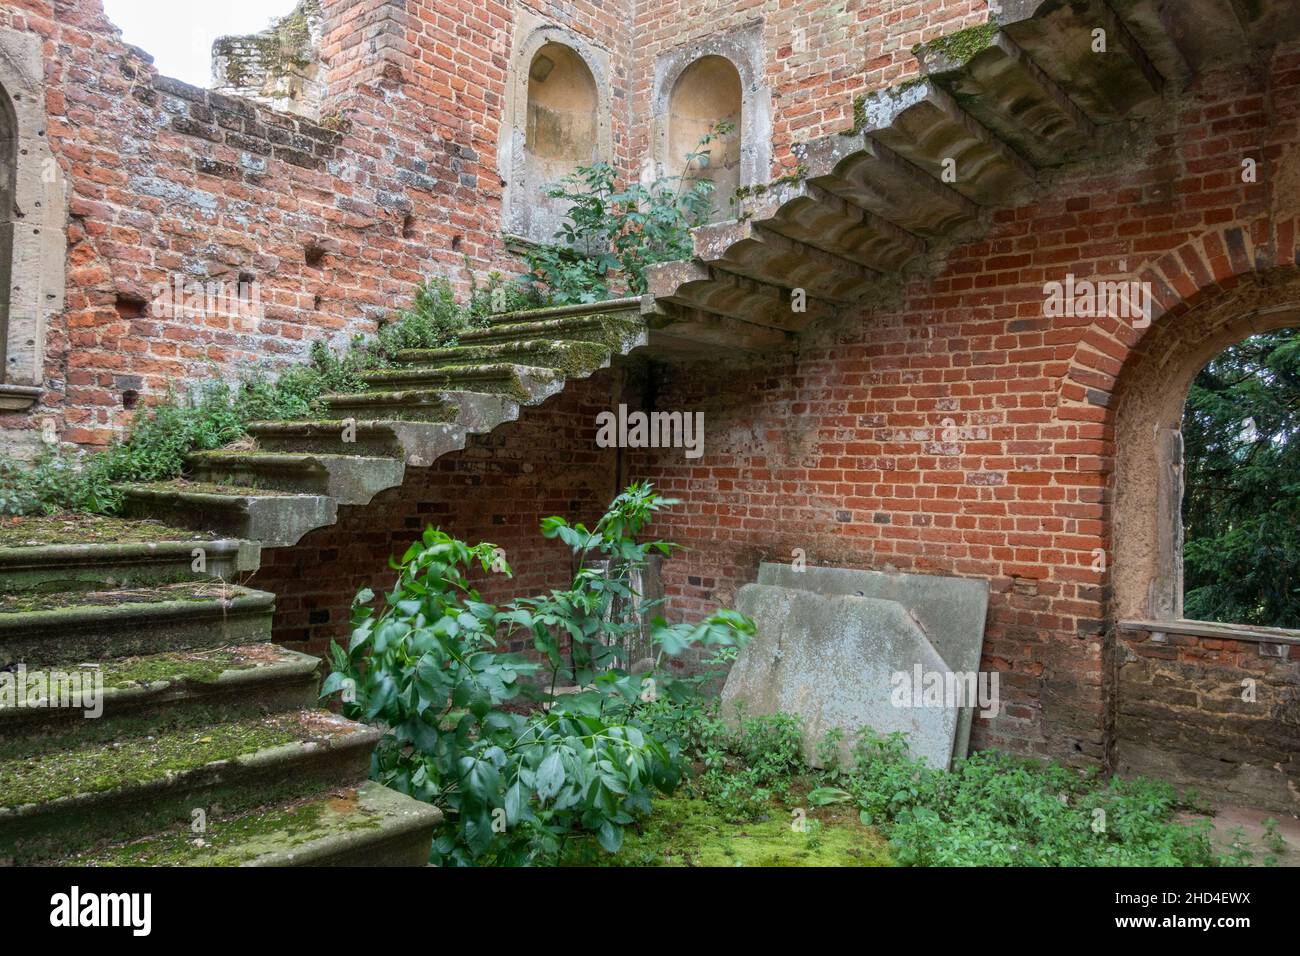 Detail zeigt die freitragende Treppe in der Ruine von Kirby Hall, einem elisabethanischen Landhaus, in der Nähe von Gretton, Northamptonshire, England. Stockfoto